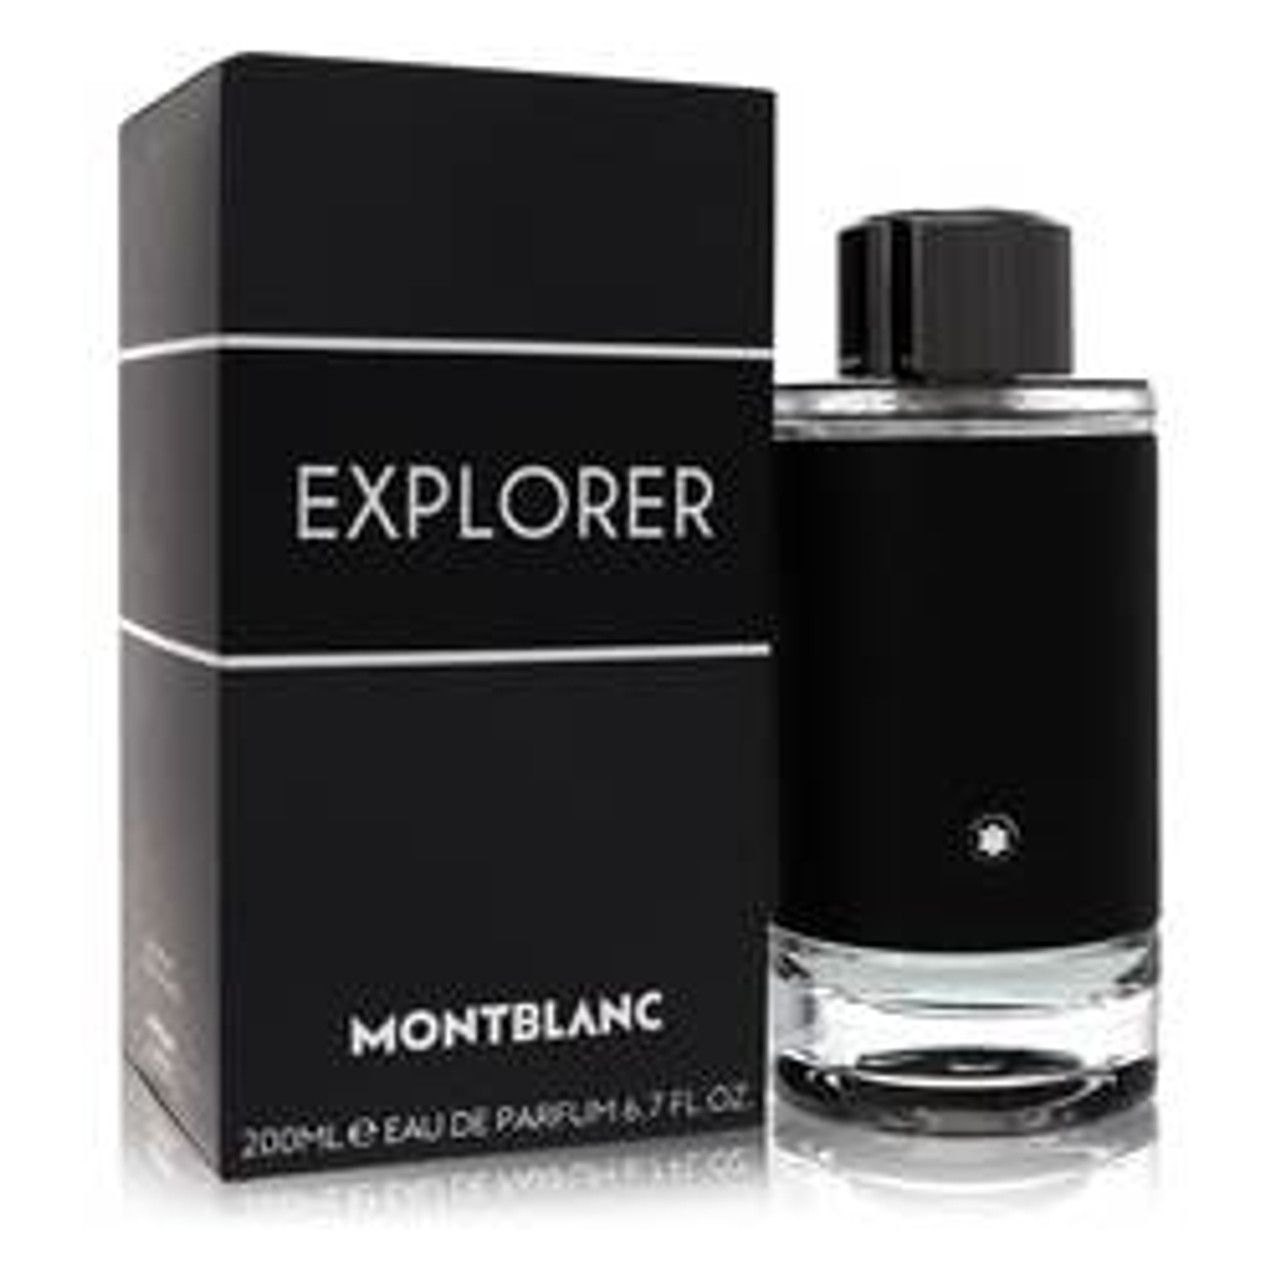 Montblanc Explorer Cologne By Mont Blanc Eau De Parfum Spray 6.7 oz for Men - *Pre-Order